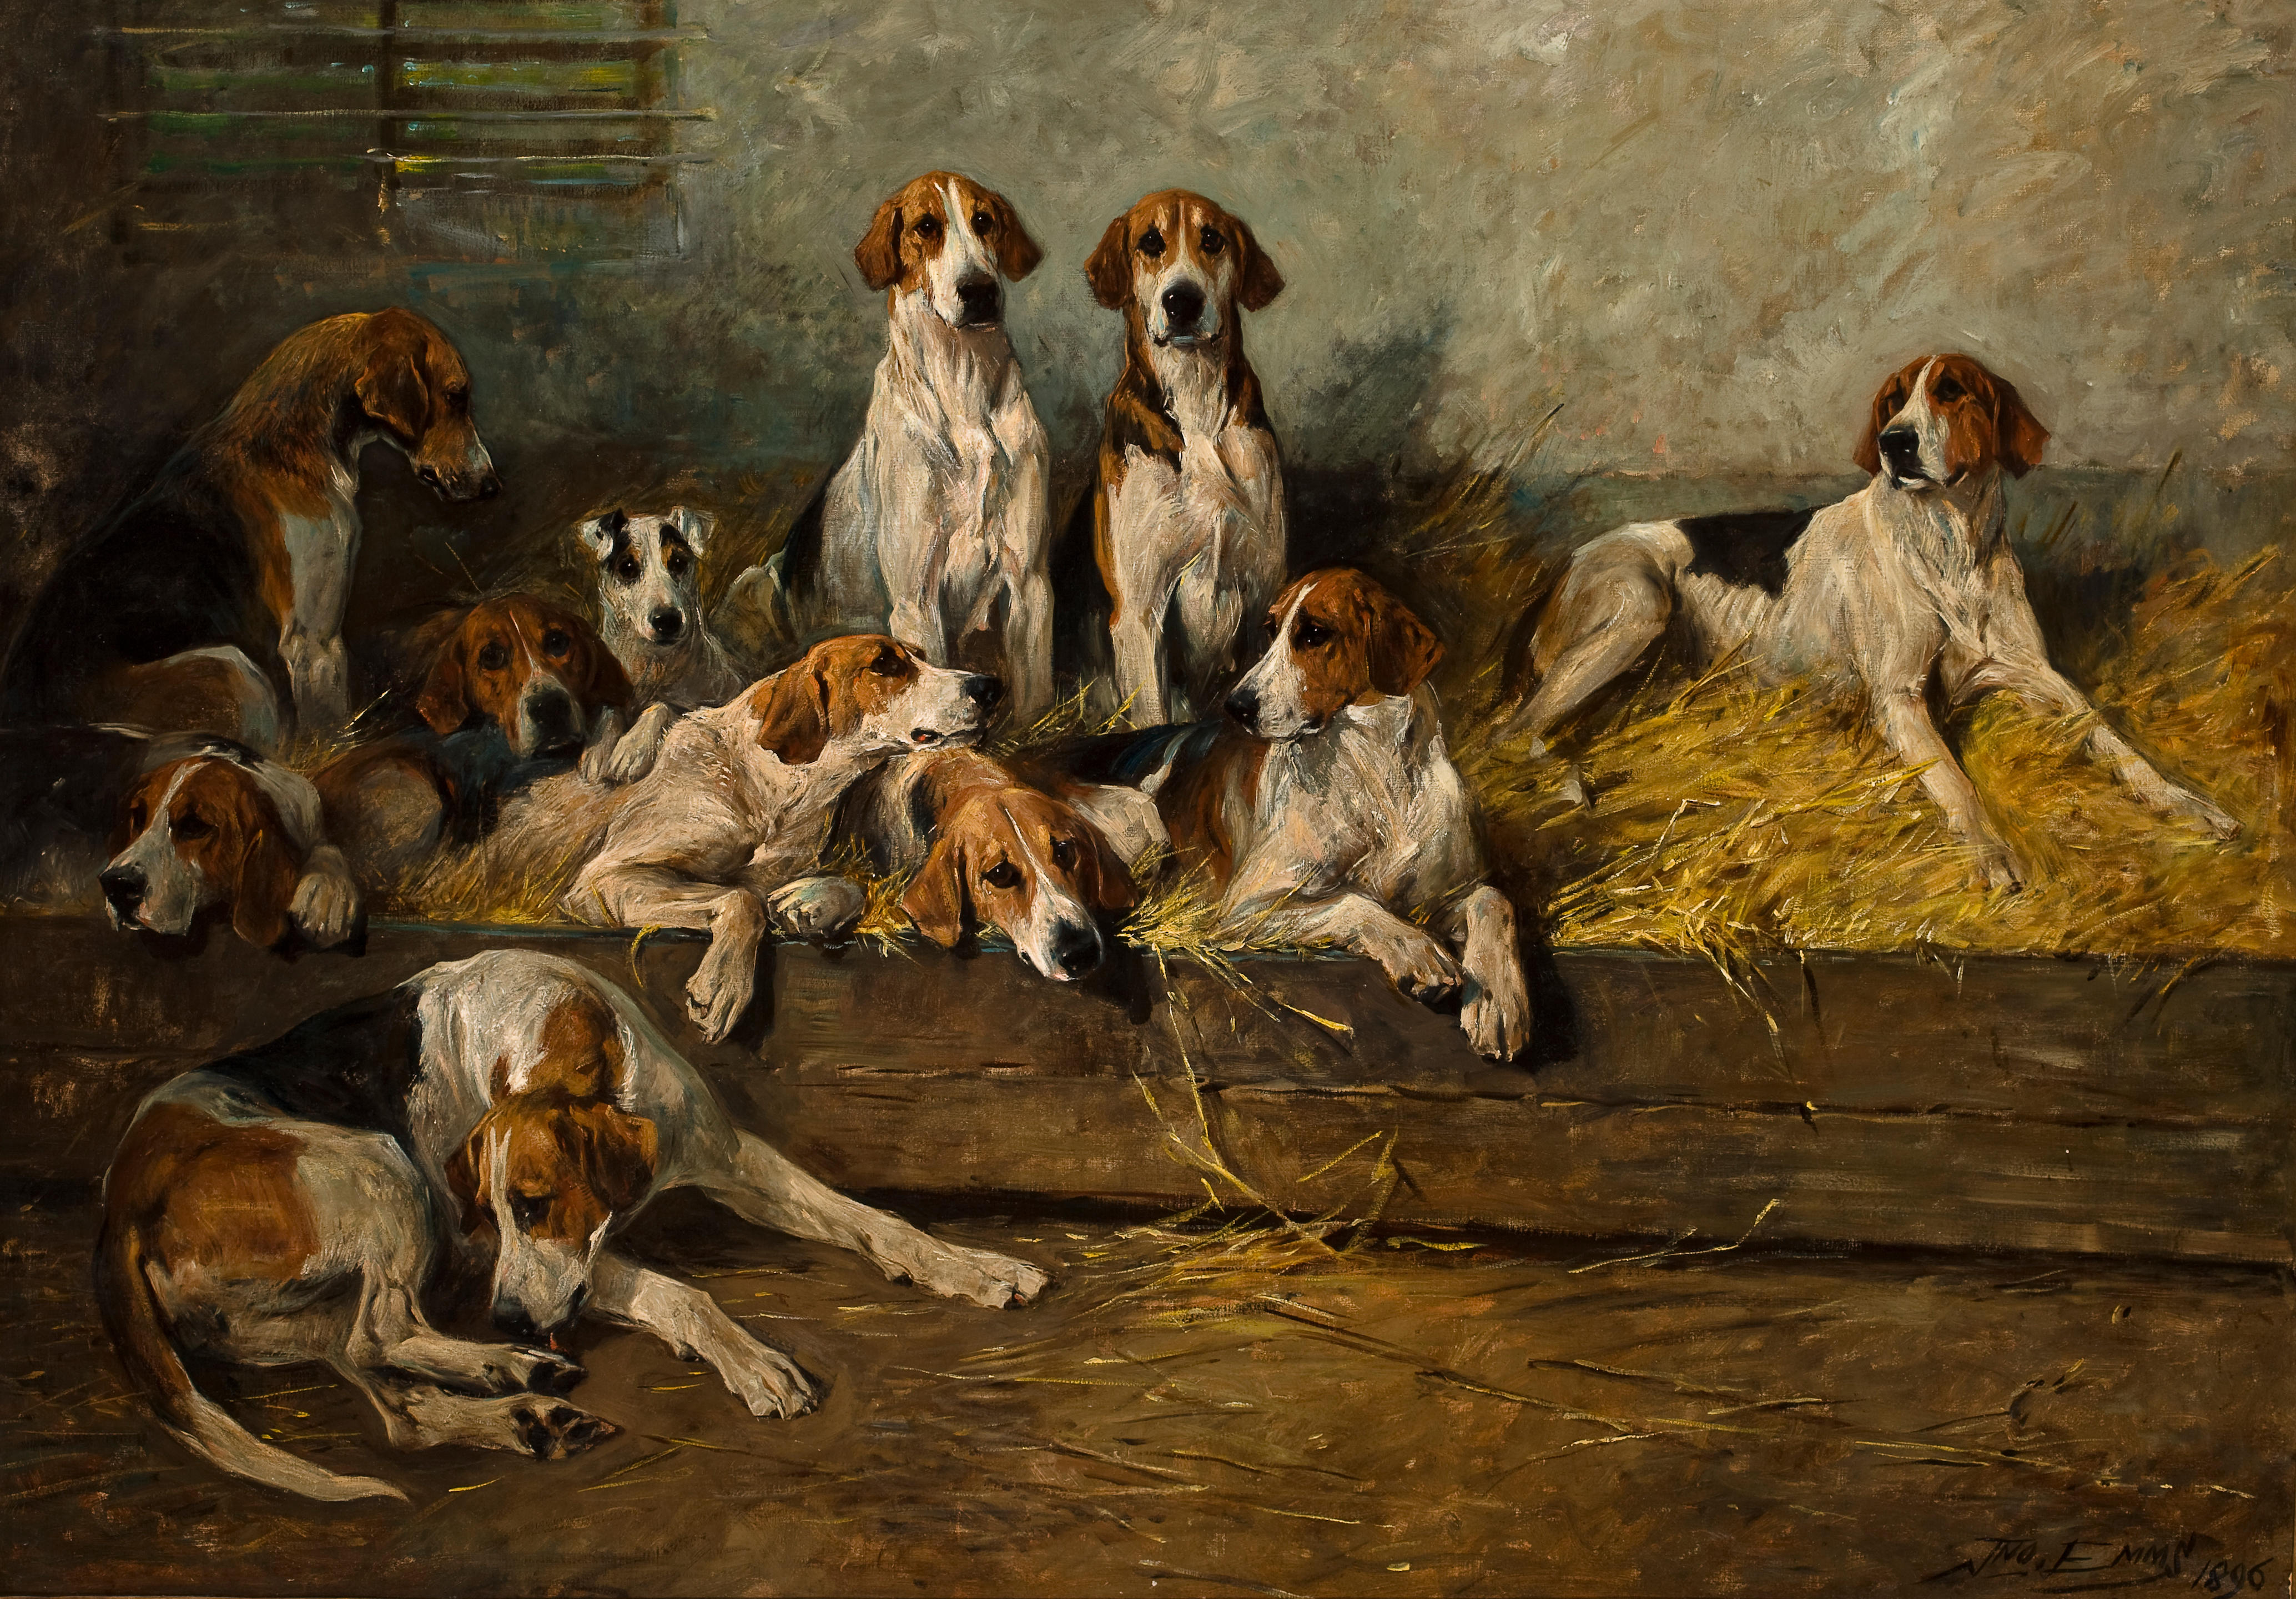 Как собаки сюжет. Псарня 19 век. John Emms (British, 1843-1912. Охотничьи собаки 19 века. Джон Эммс фоксхаунды и терьер на конюшне.